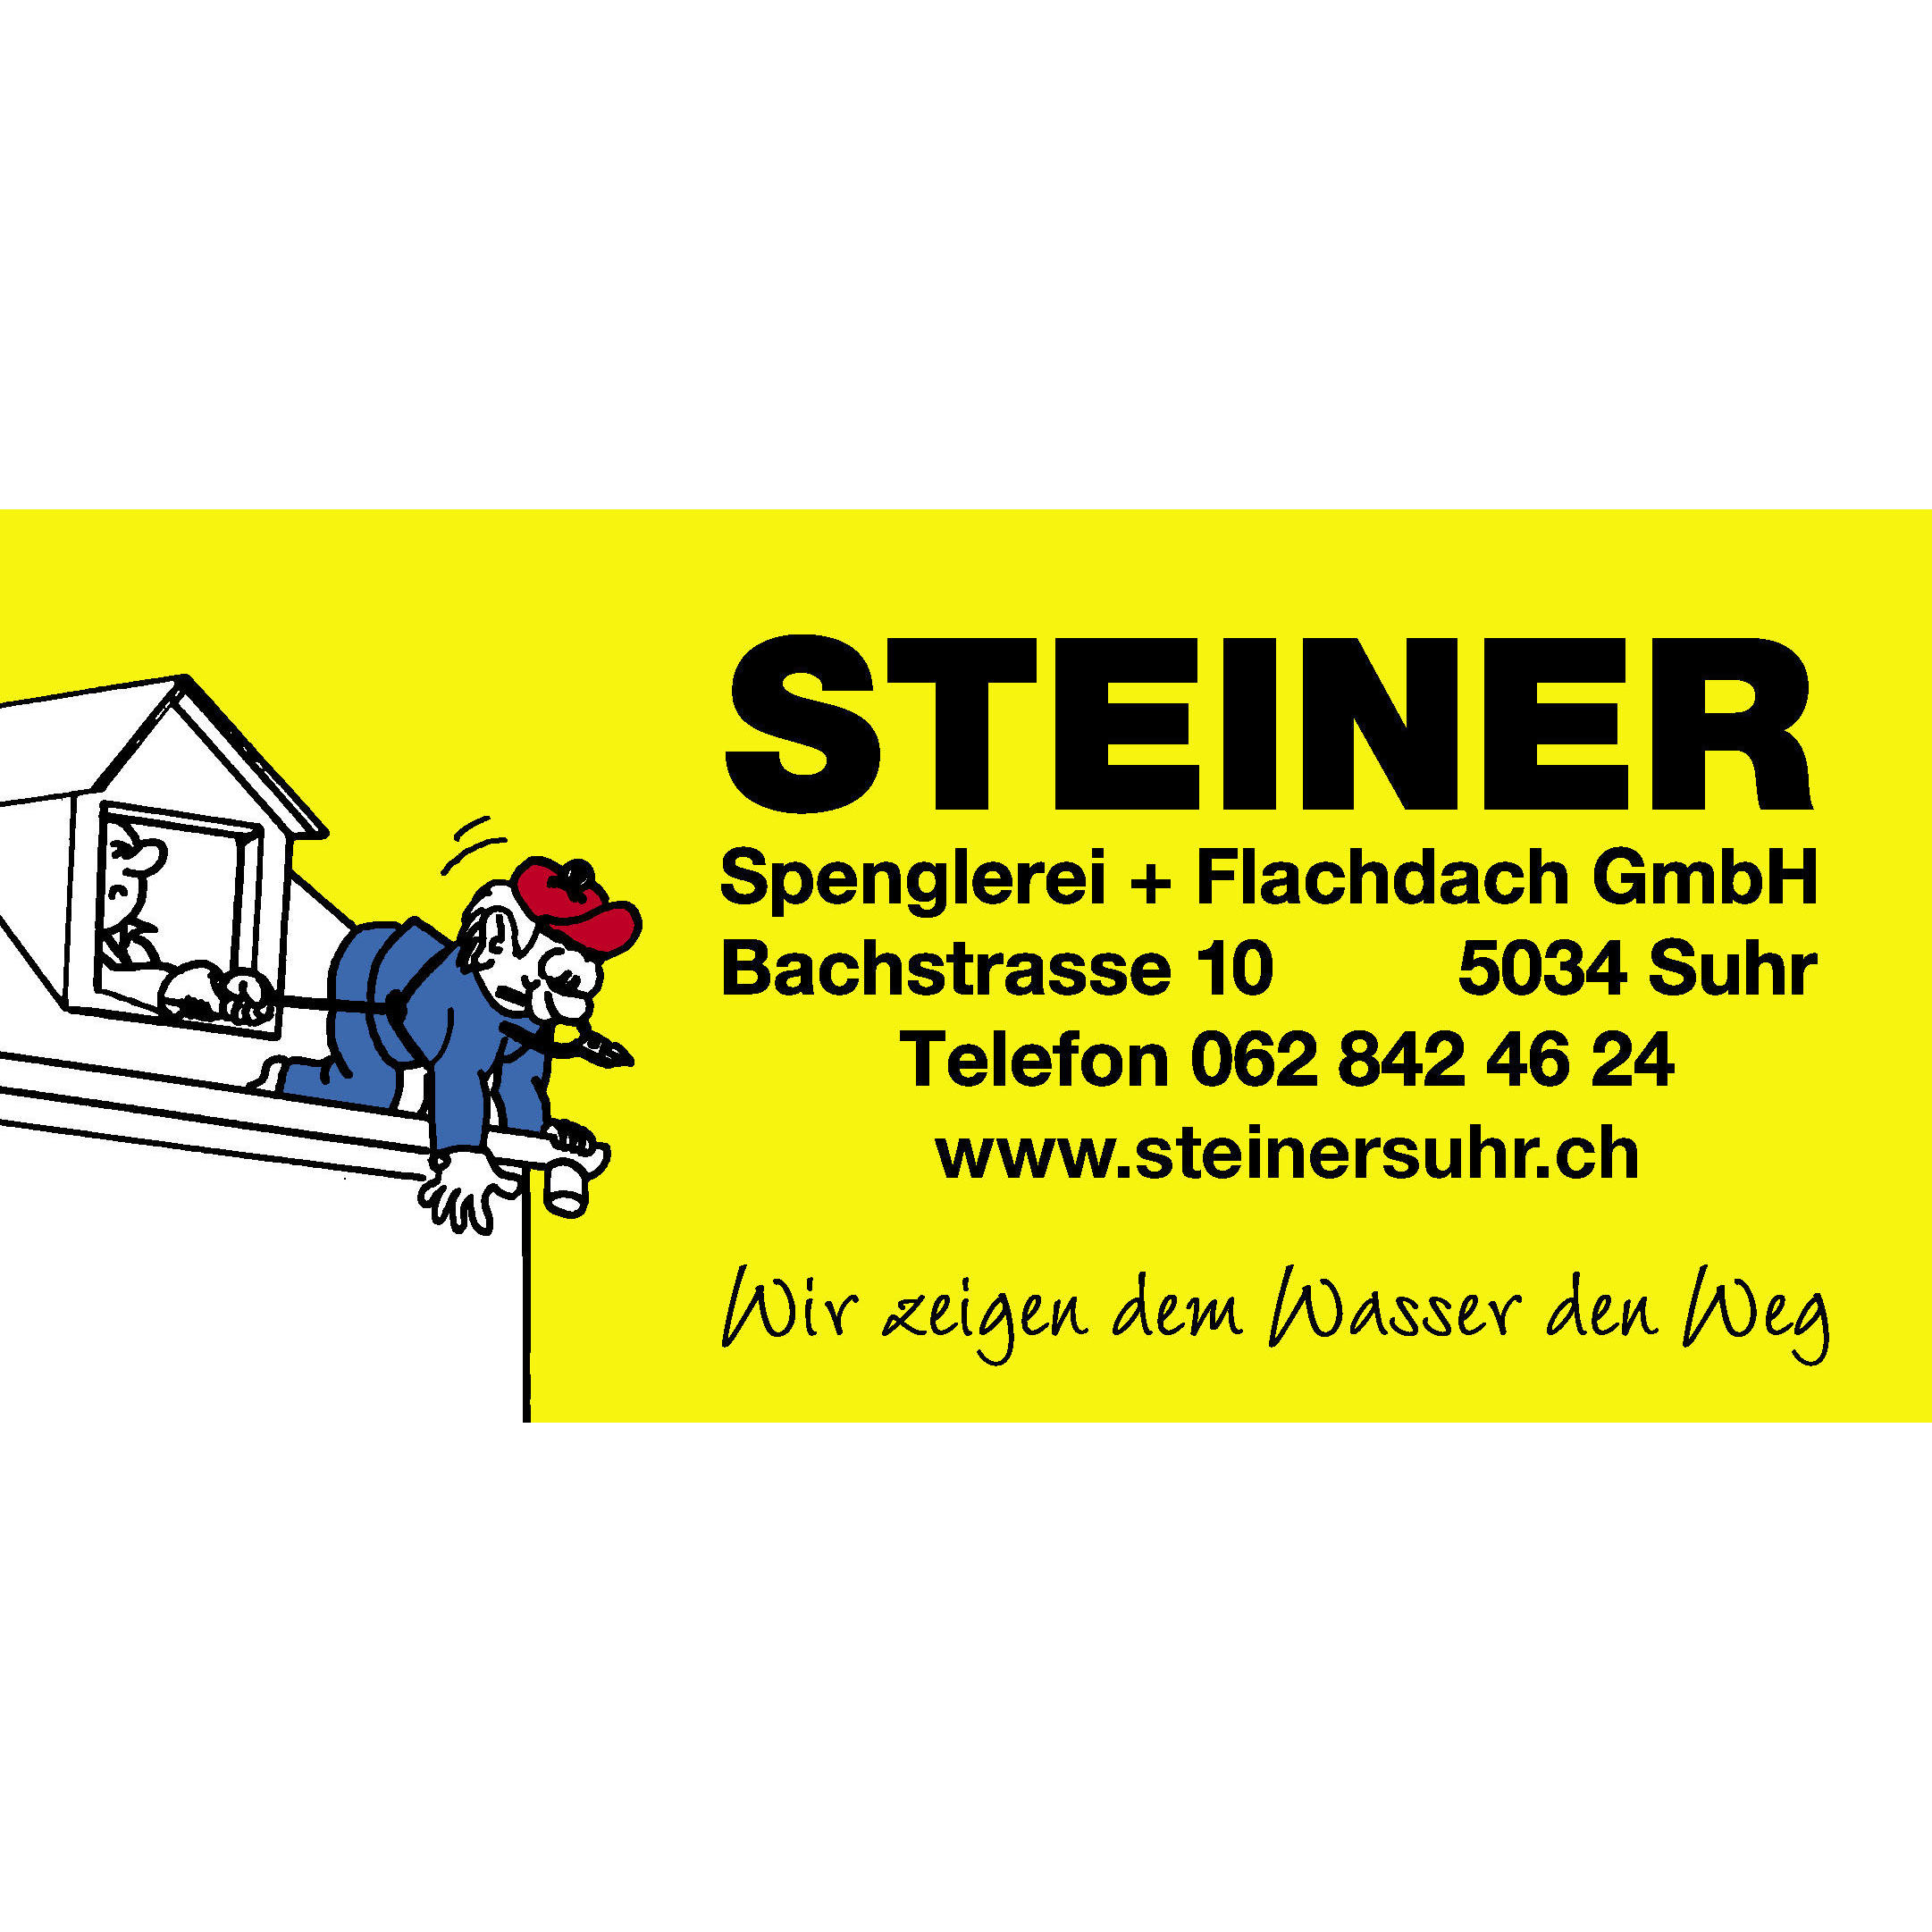 Steiner Spenglerei + Flachdach GmbH Logo